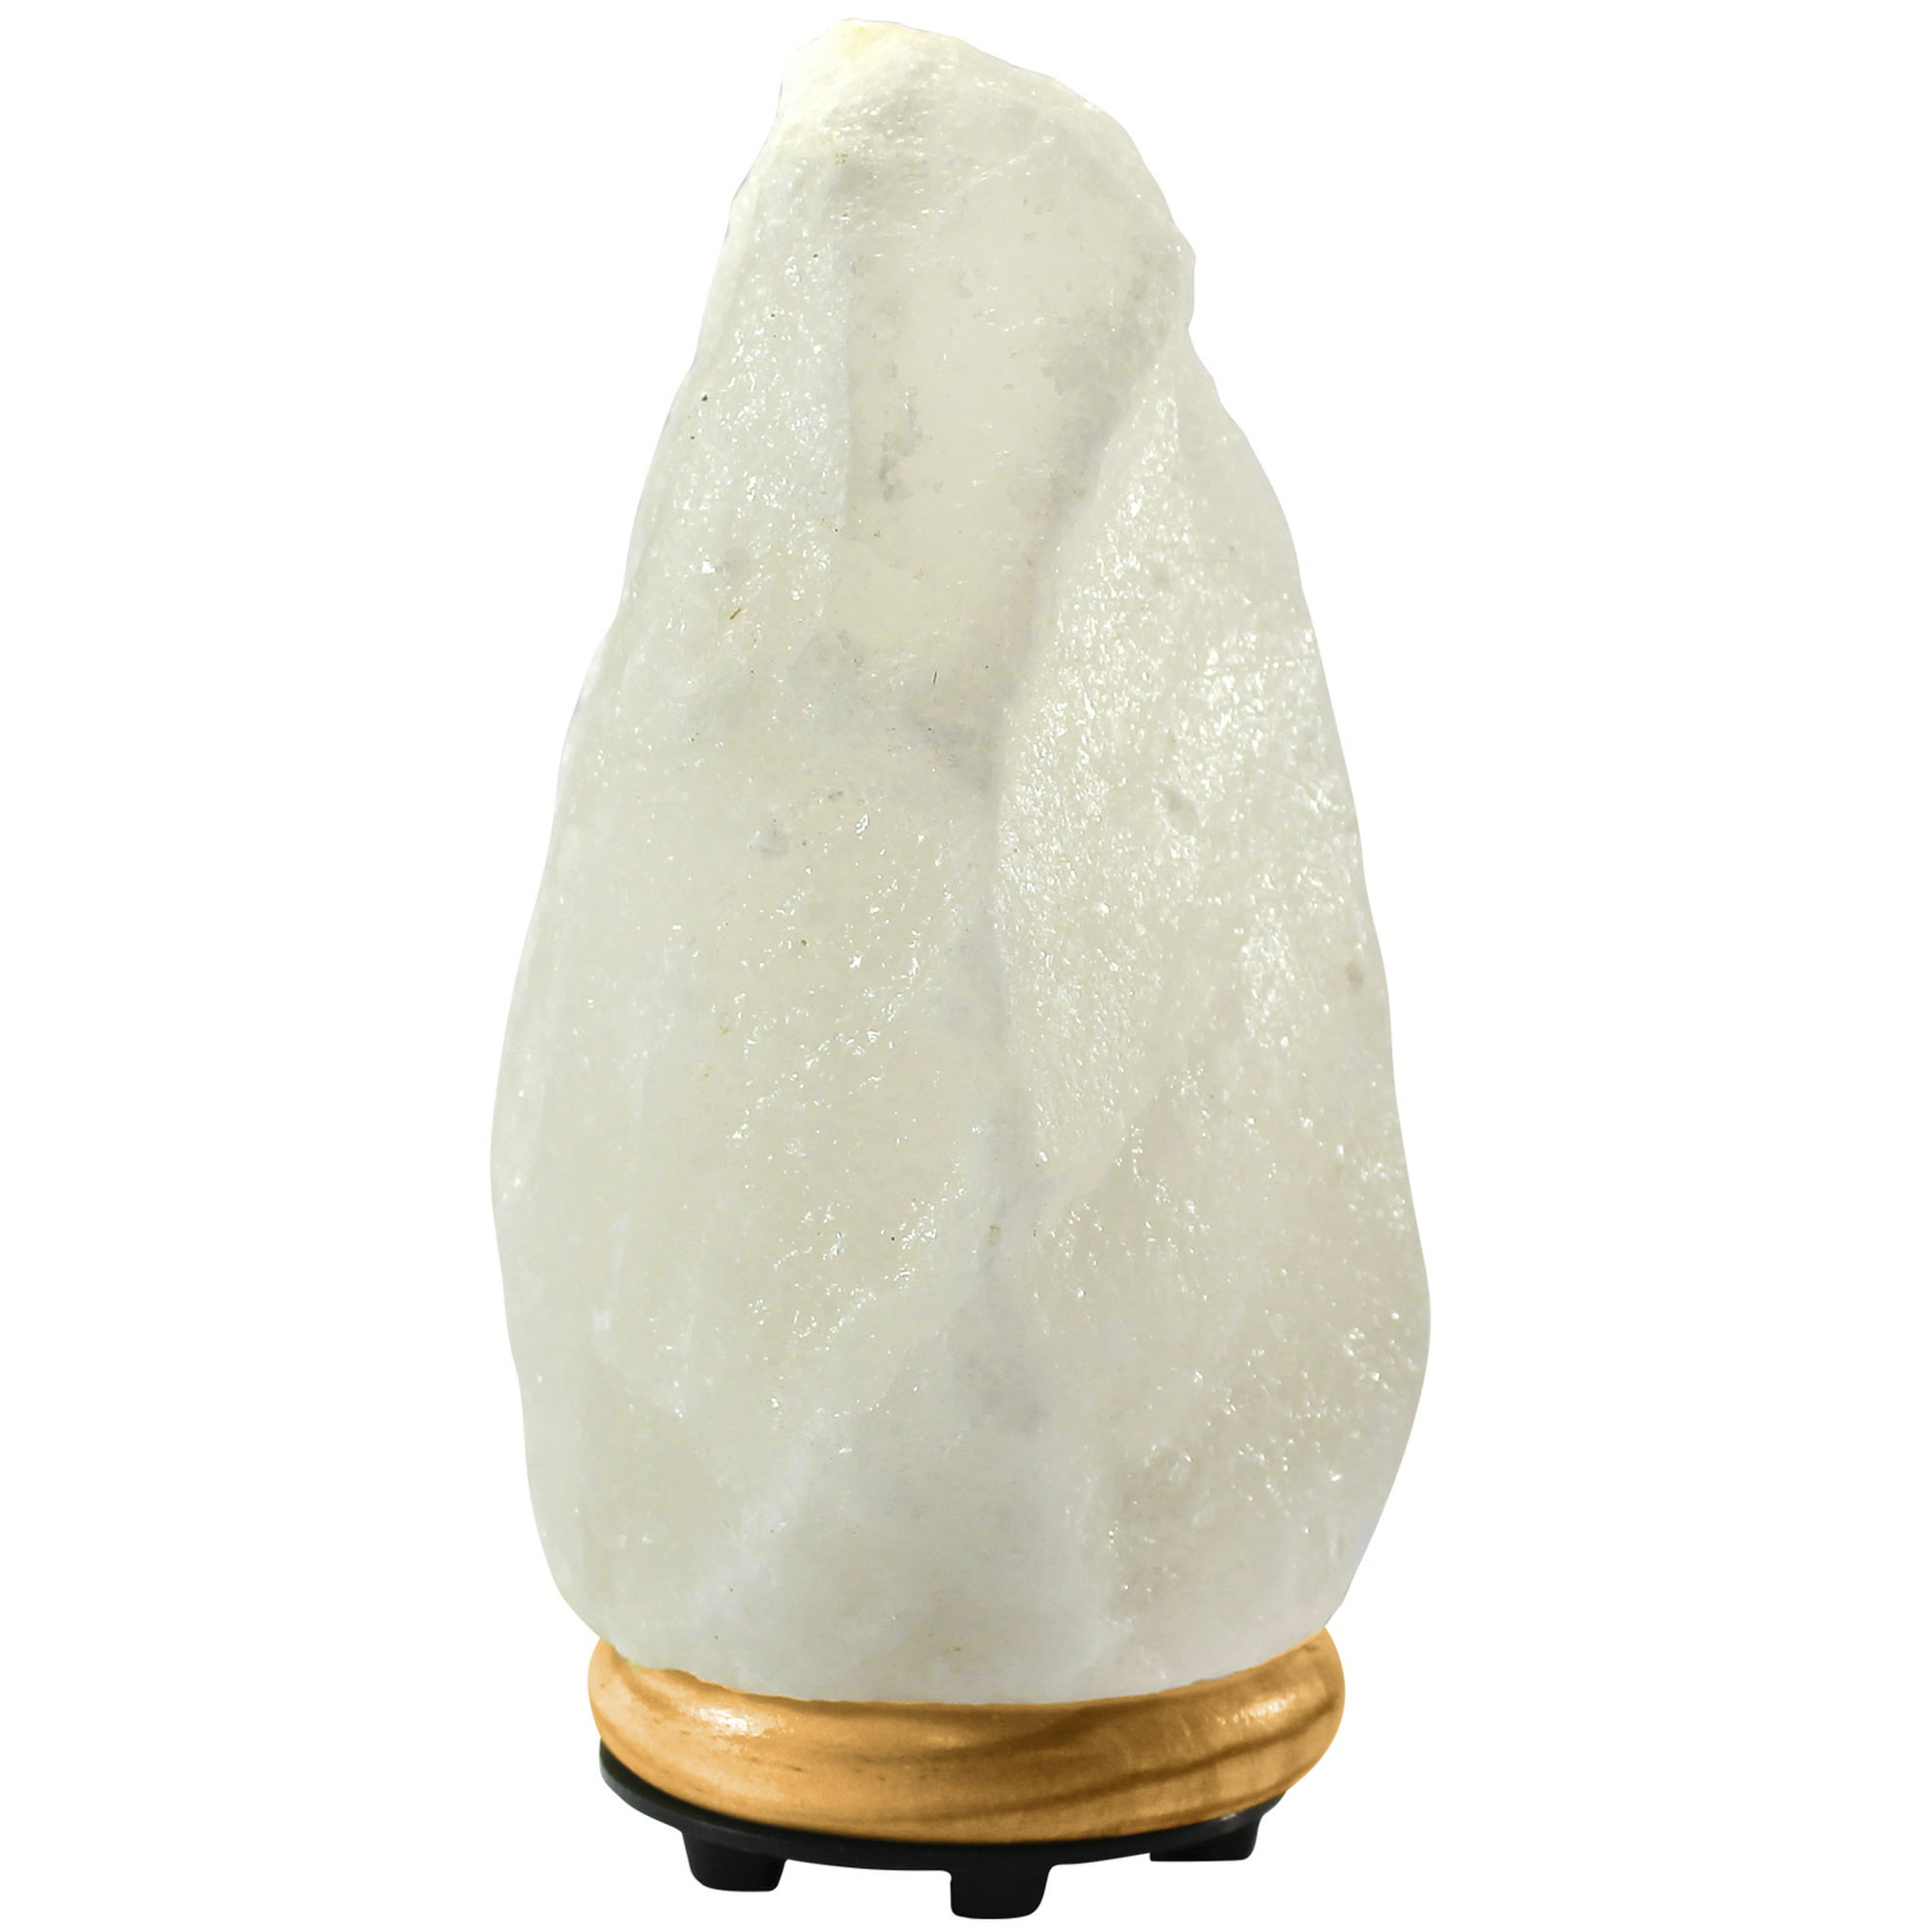  Lámpara de sal principal : Herramientas y Mejoras del Hogar